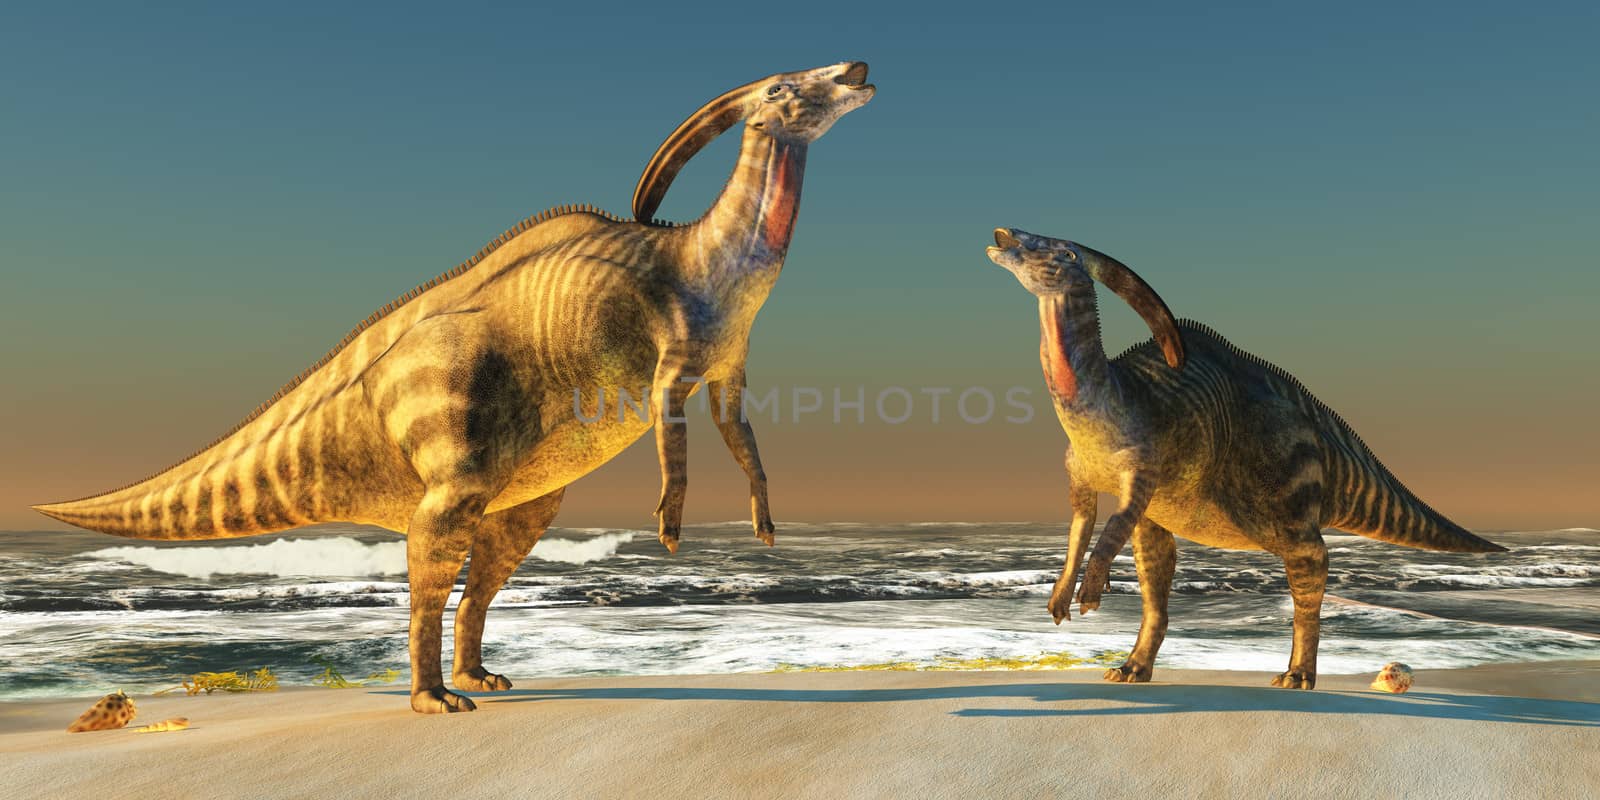 Parasaurolophus Beach by Catmando